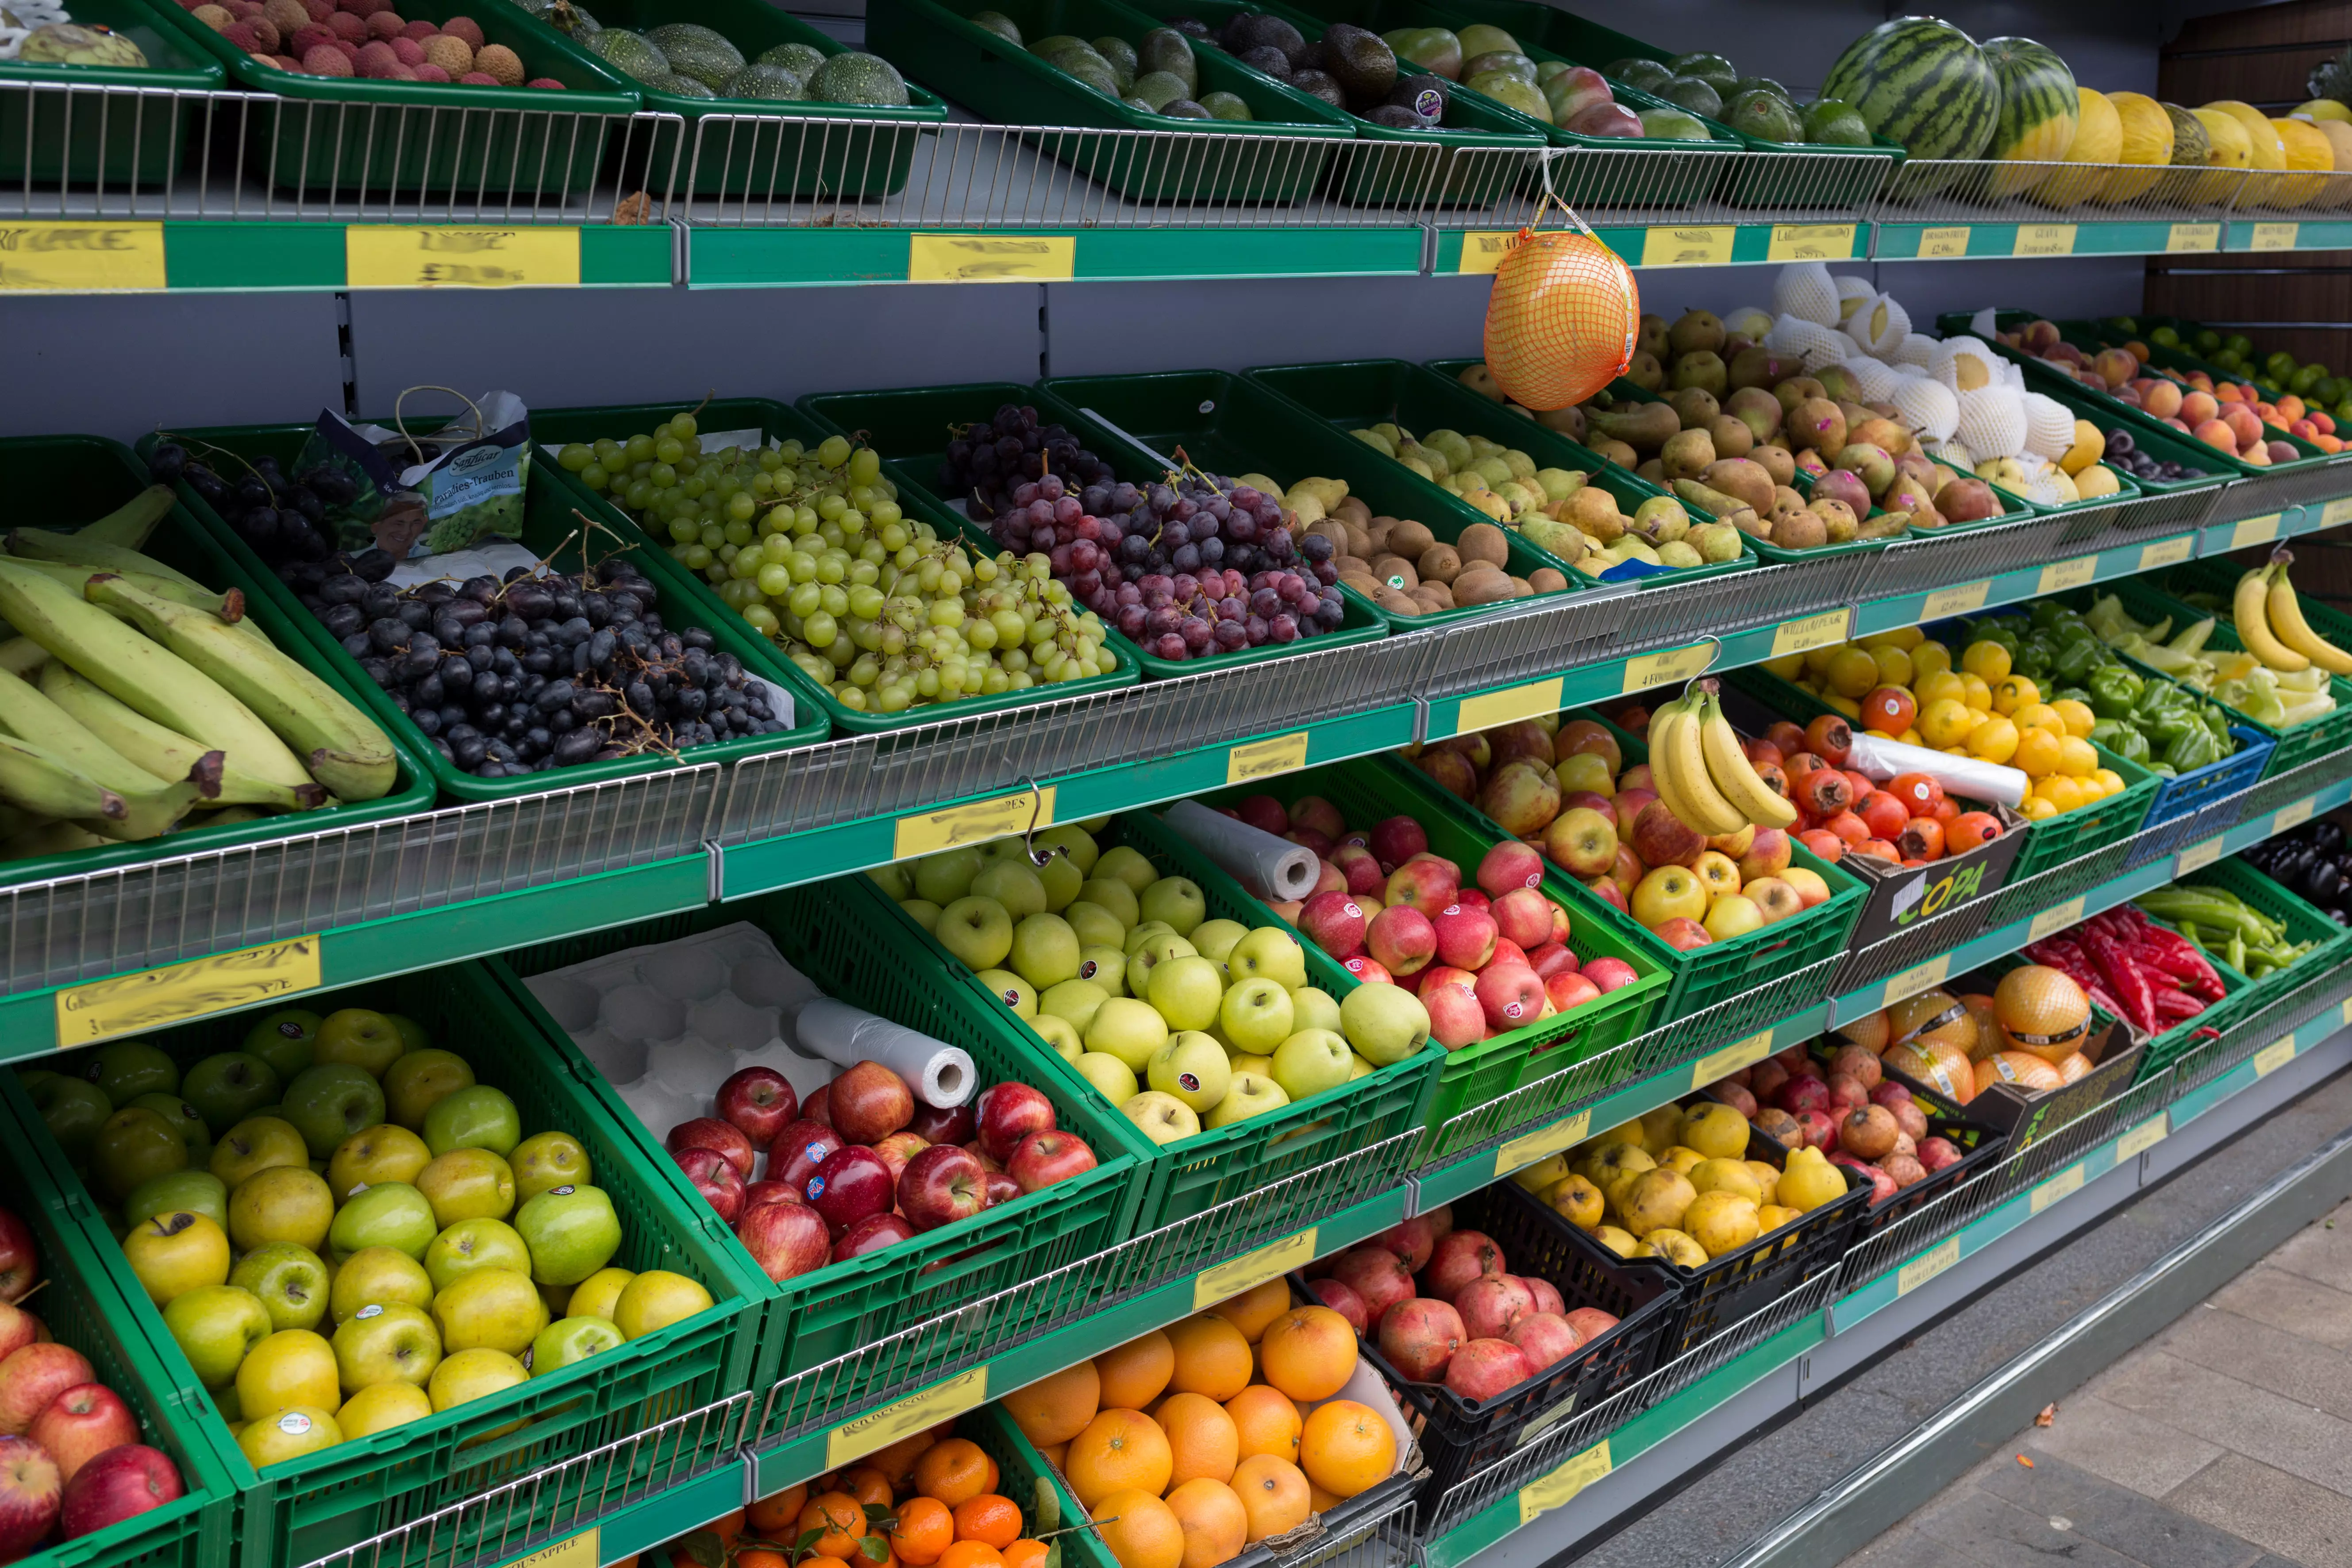 Імпортери часто транспортують недозрілі овочі та фрукти, які 